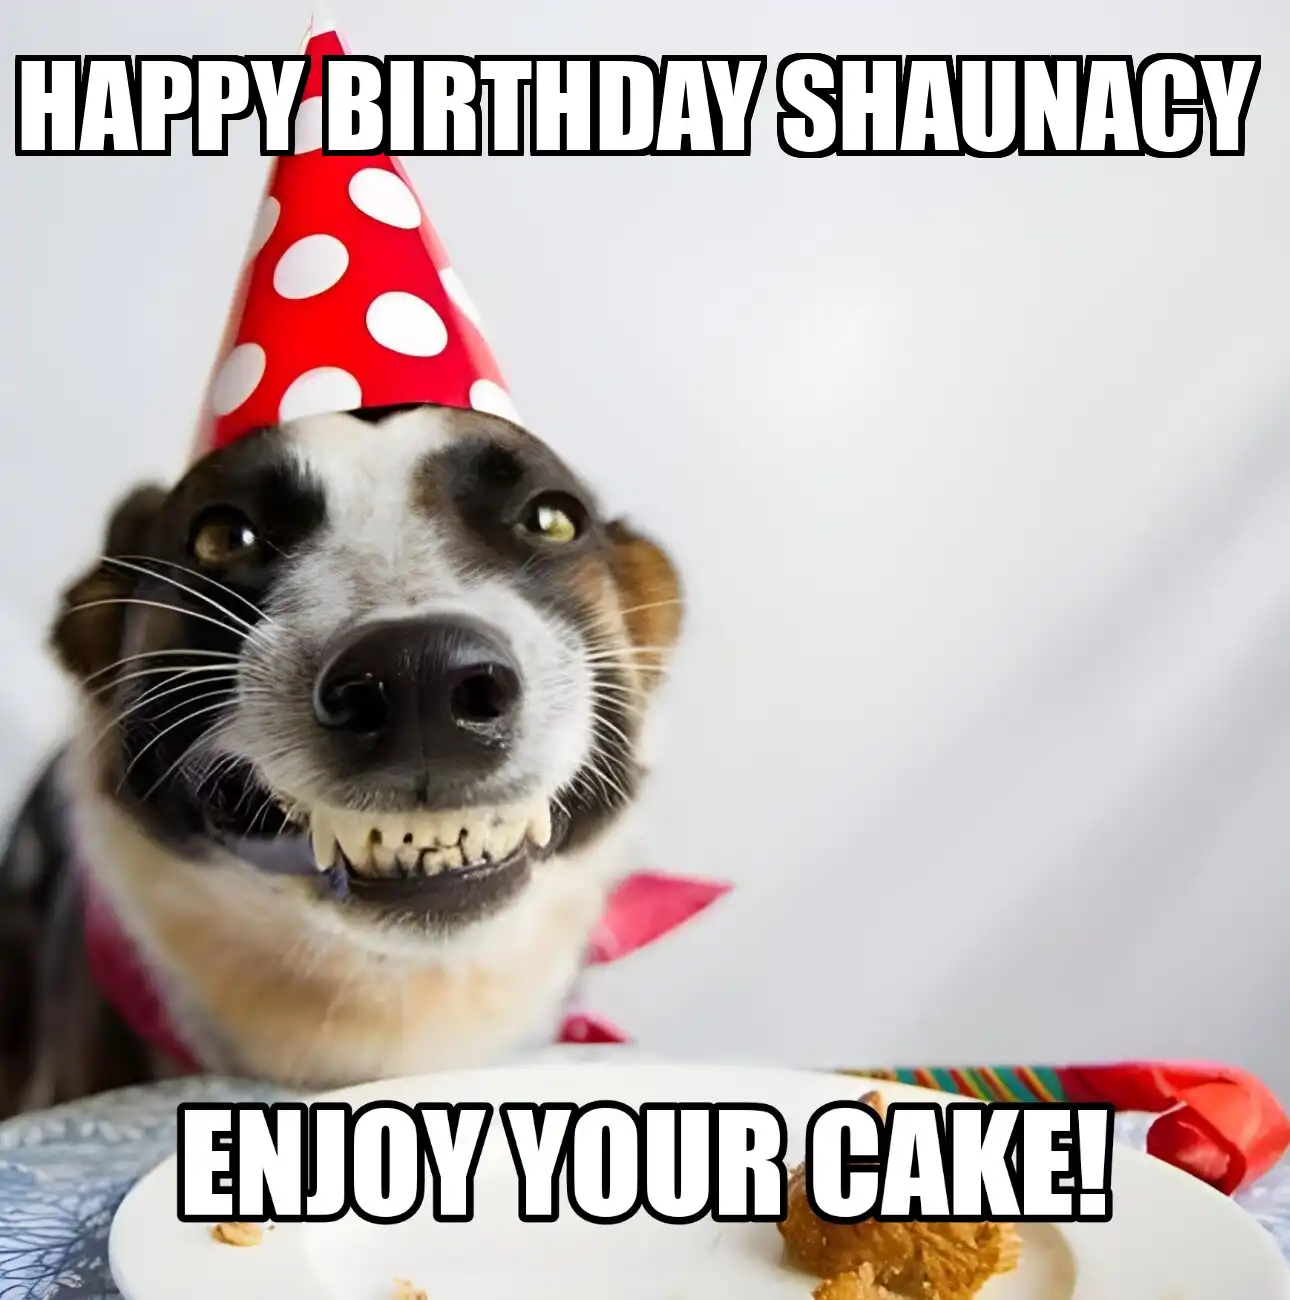 Happy Birthday Shaunacy Enjoy Your Cake Dog Meme